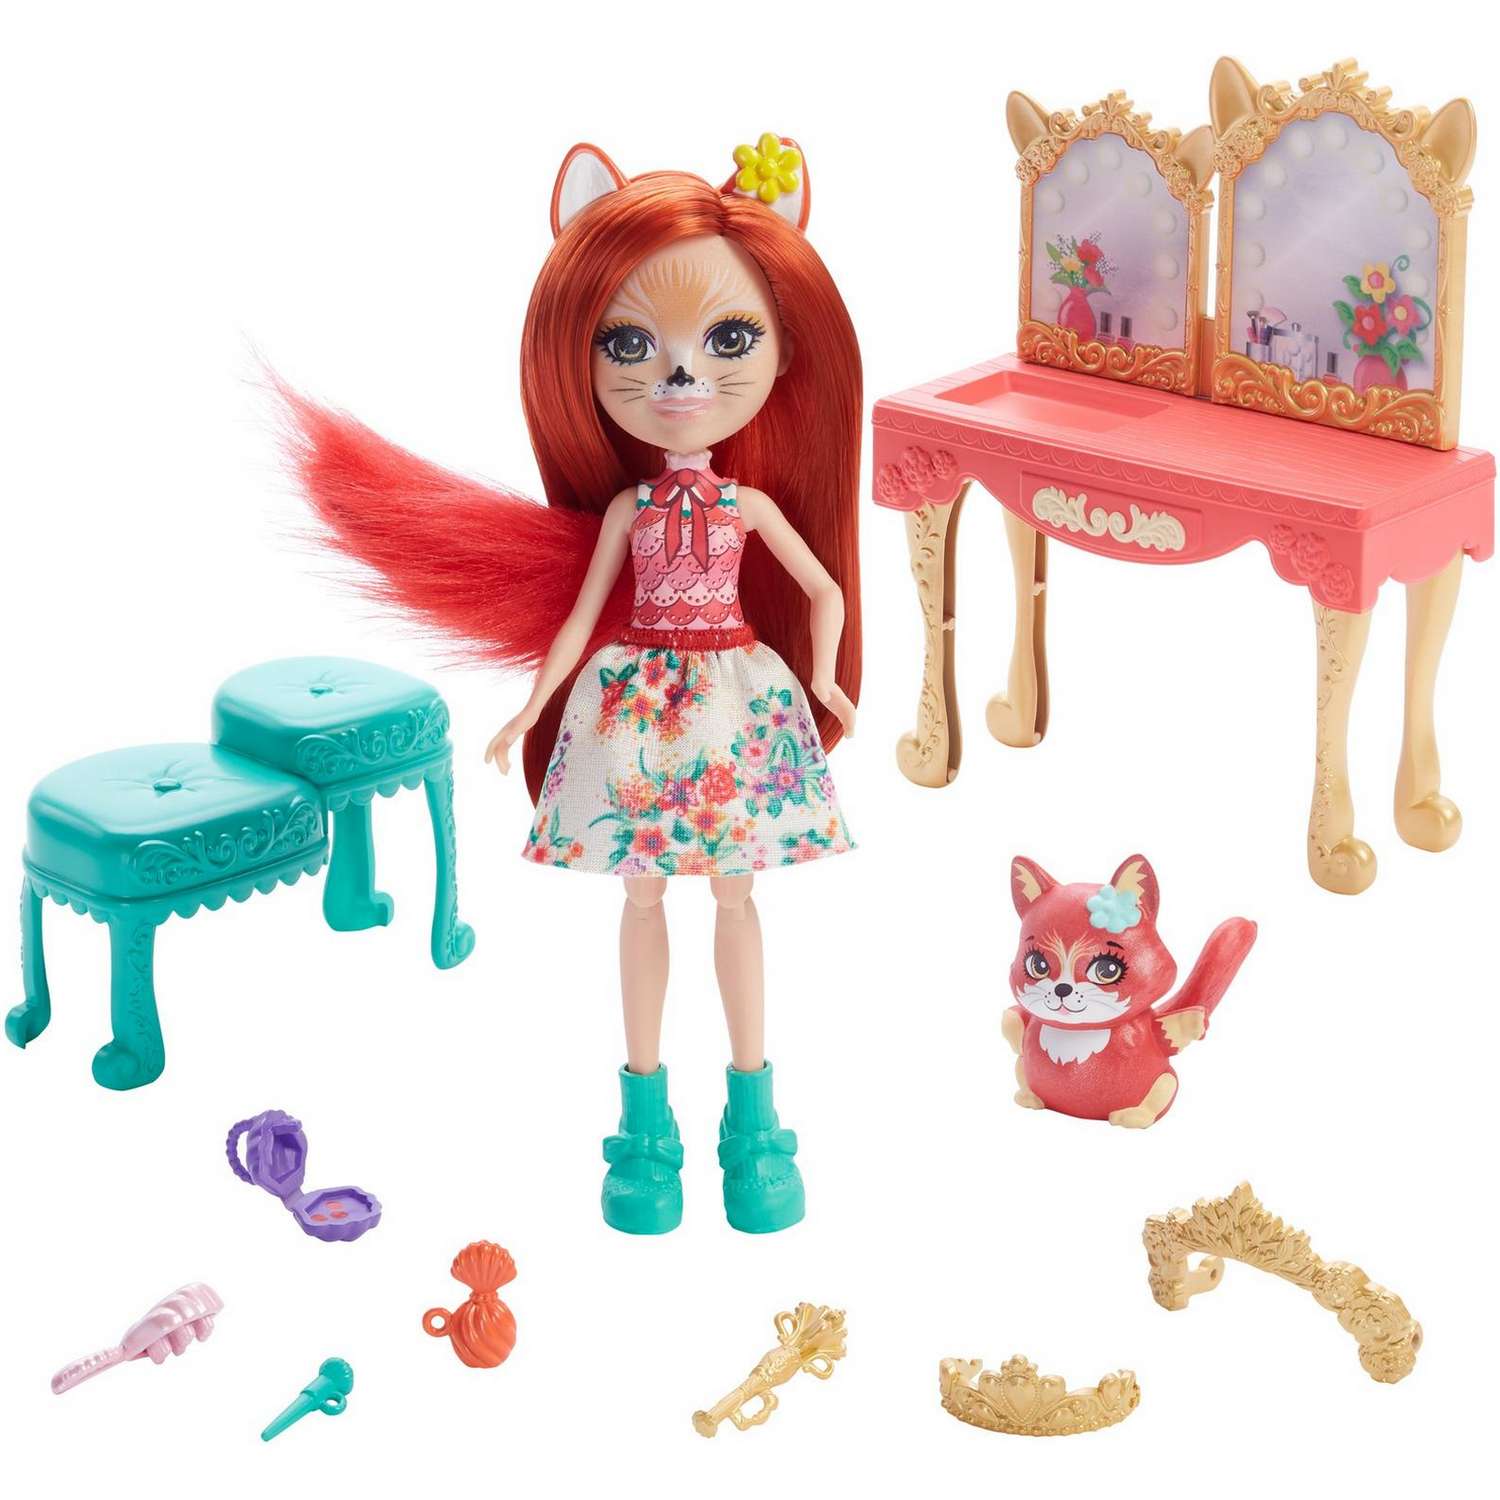 Набор игровой Enchantimals кукла+питомец с аксессуарами Викторианский туалетный столик GYJ05 GJX35 - фото 1